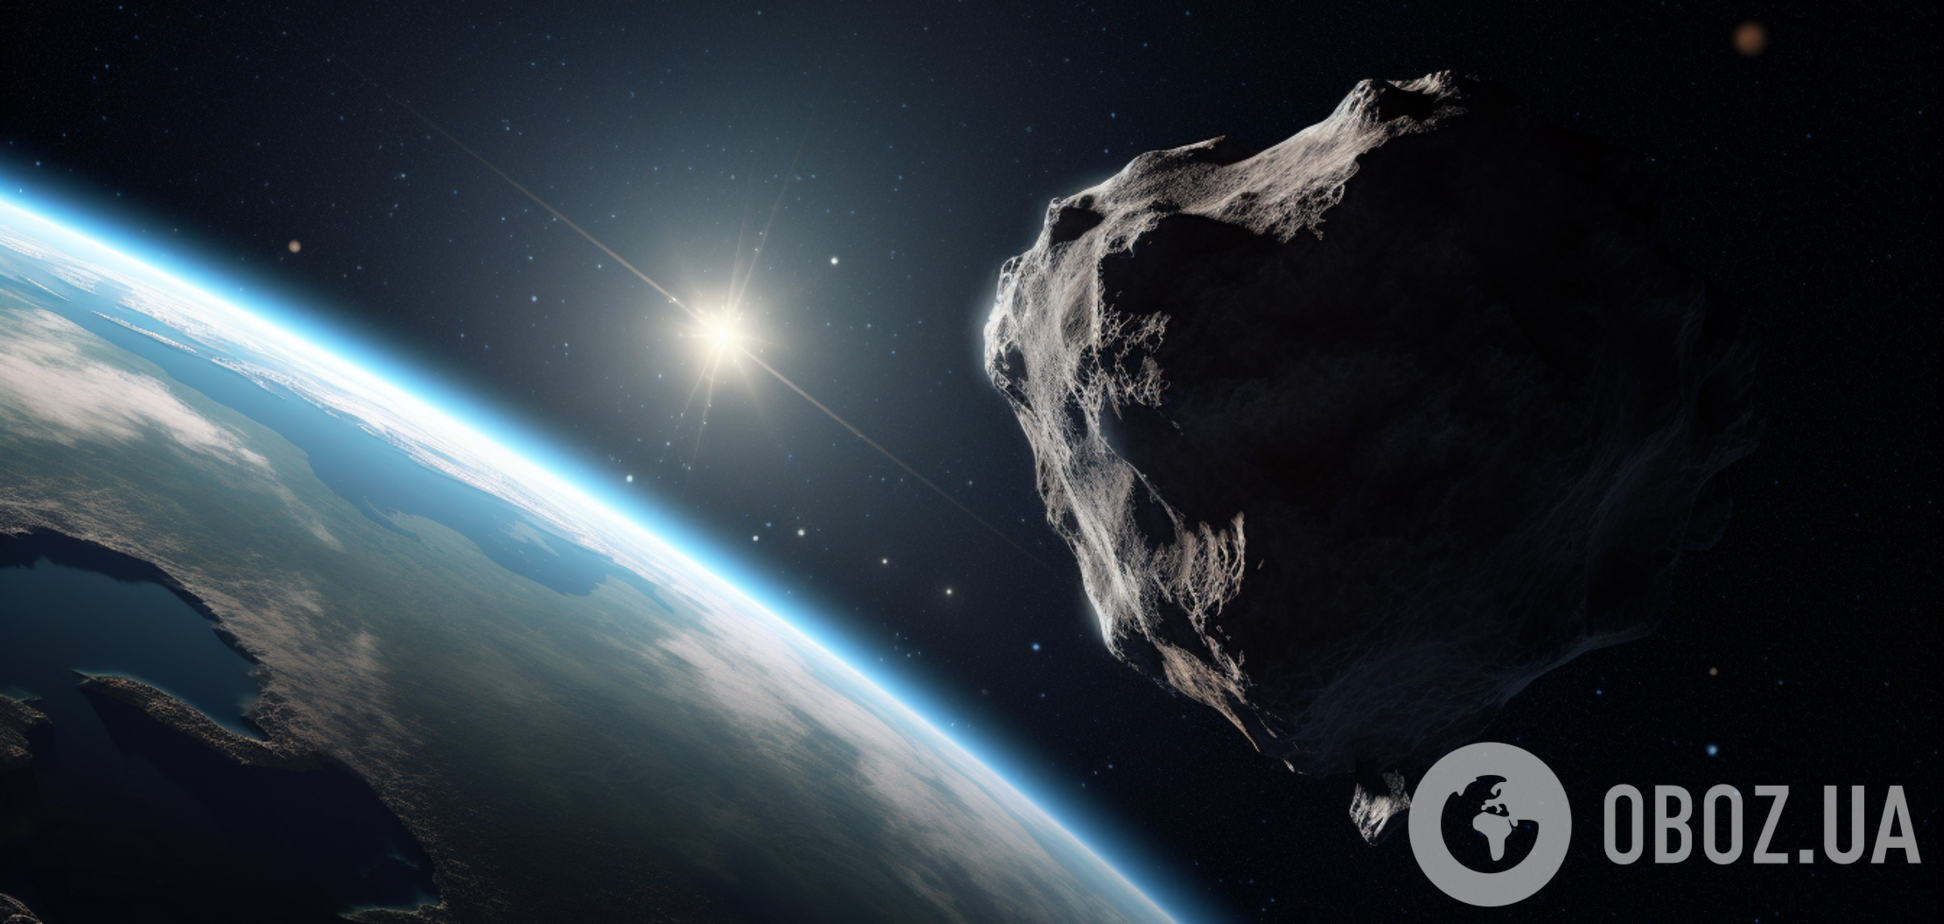 Астероиды неожиданно могут стать спасением для Земли и человечества: что придумали ученые